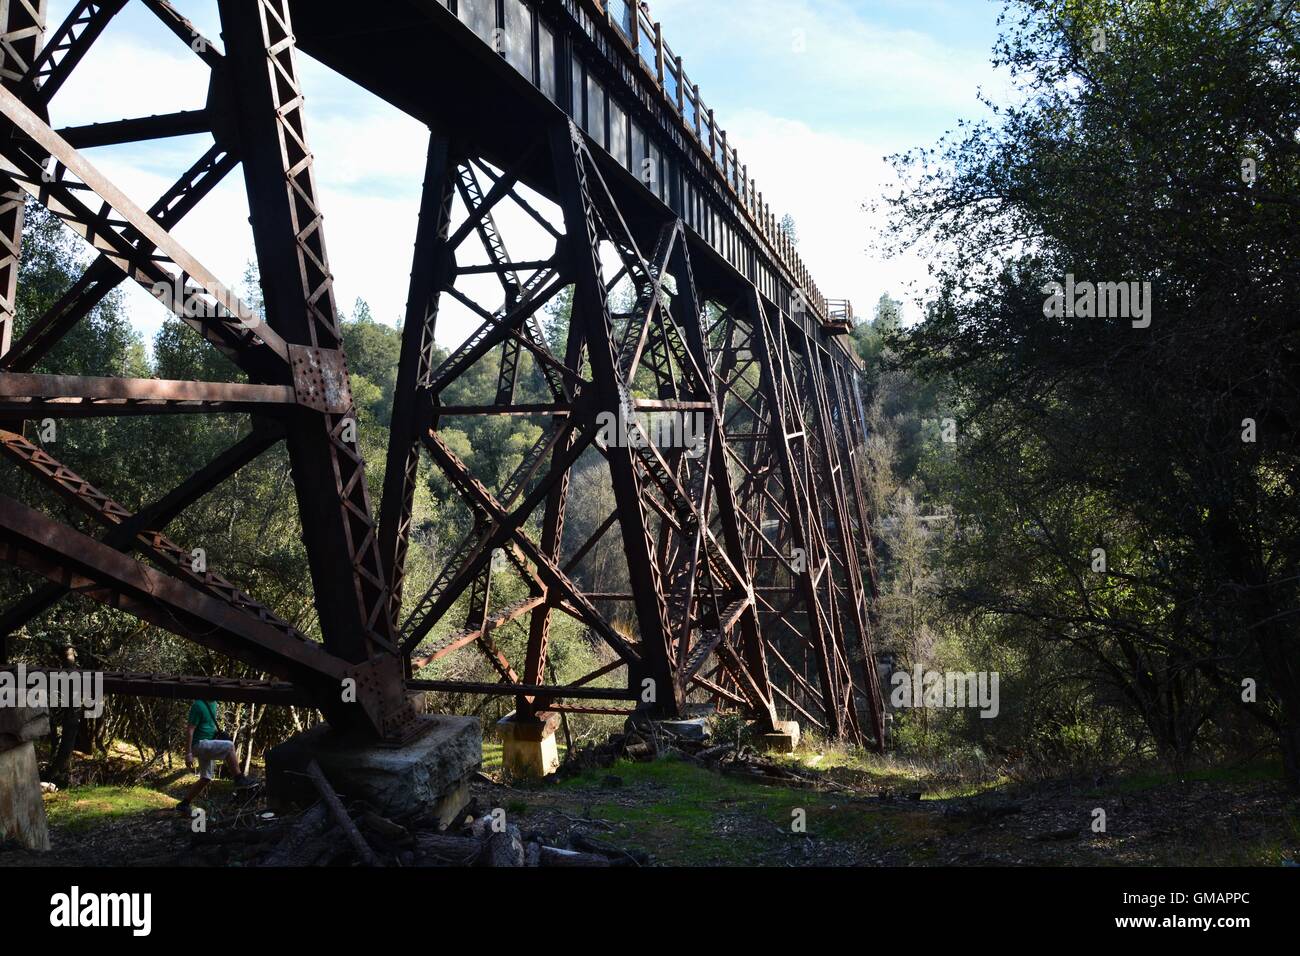 Historical Railroad bridge in El Dorado County. Stock Photo